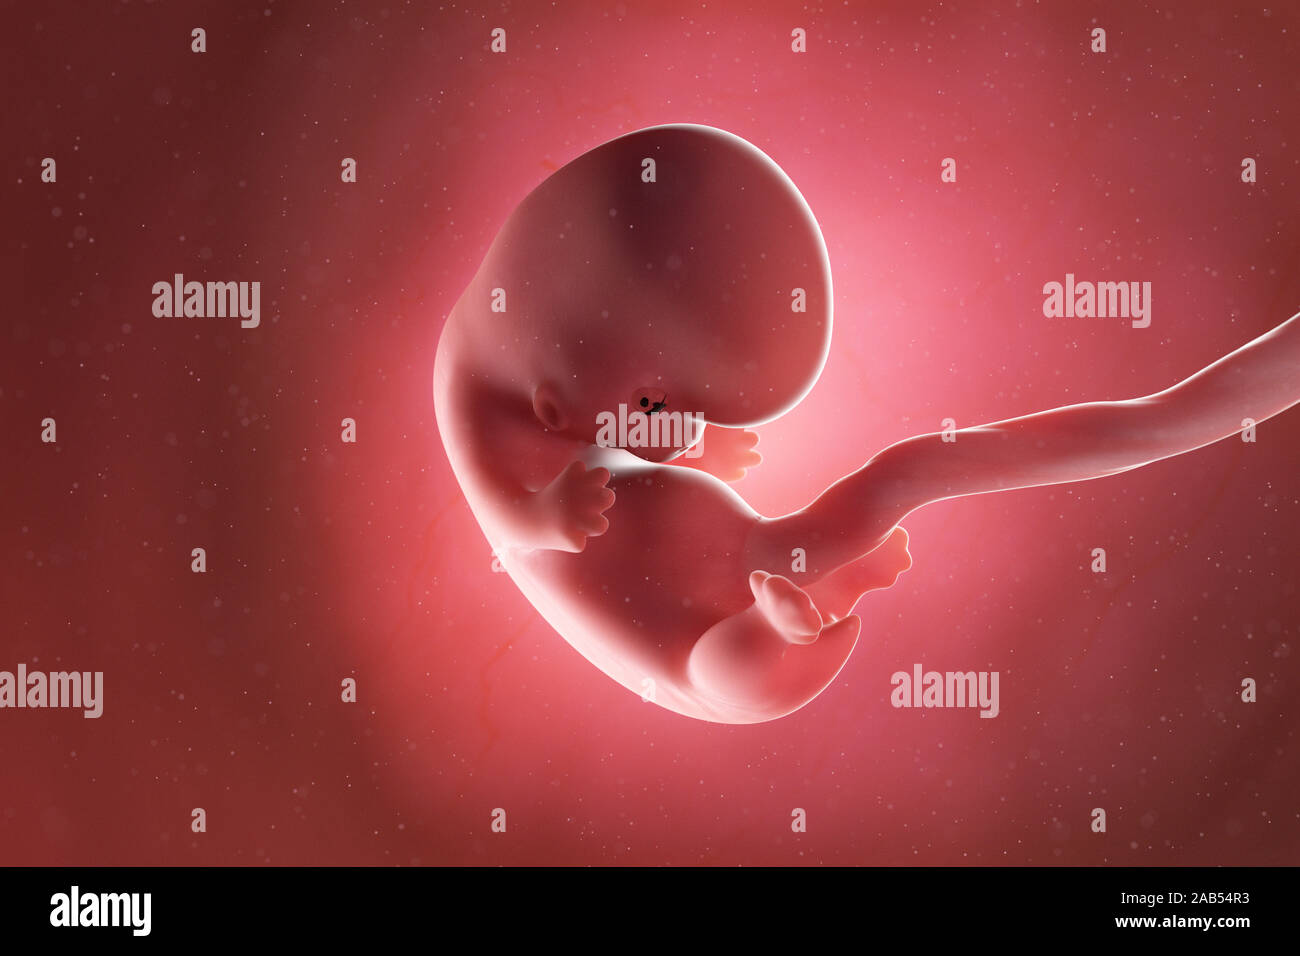 Médicalement en rendu 3d illustration précise d'un foetus à la semaine 8 Banque D'Images